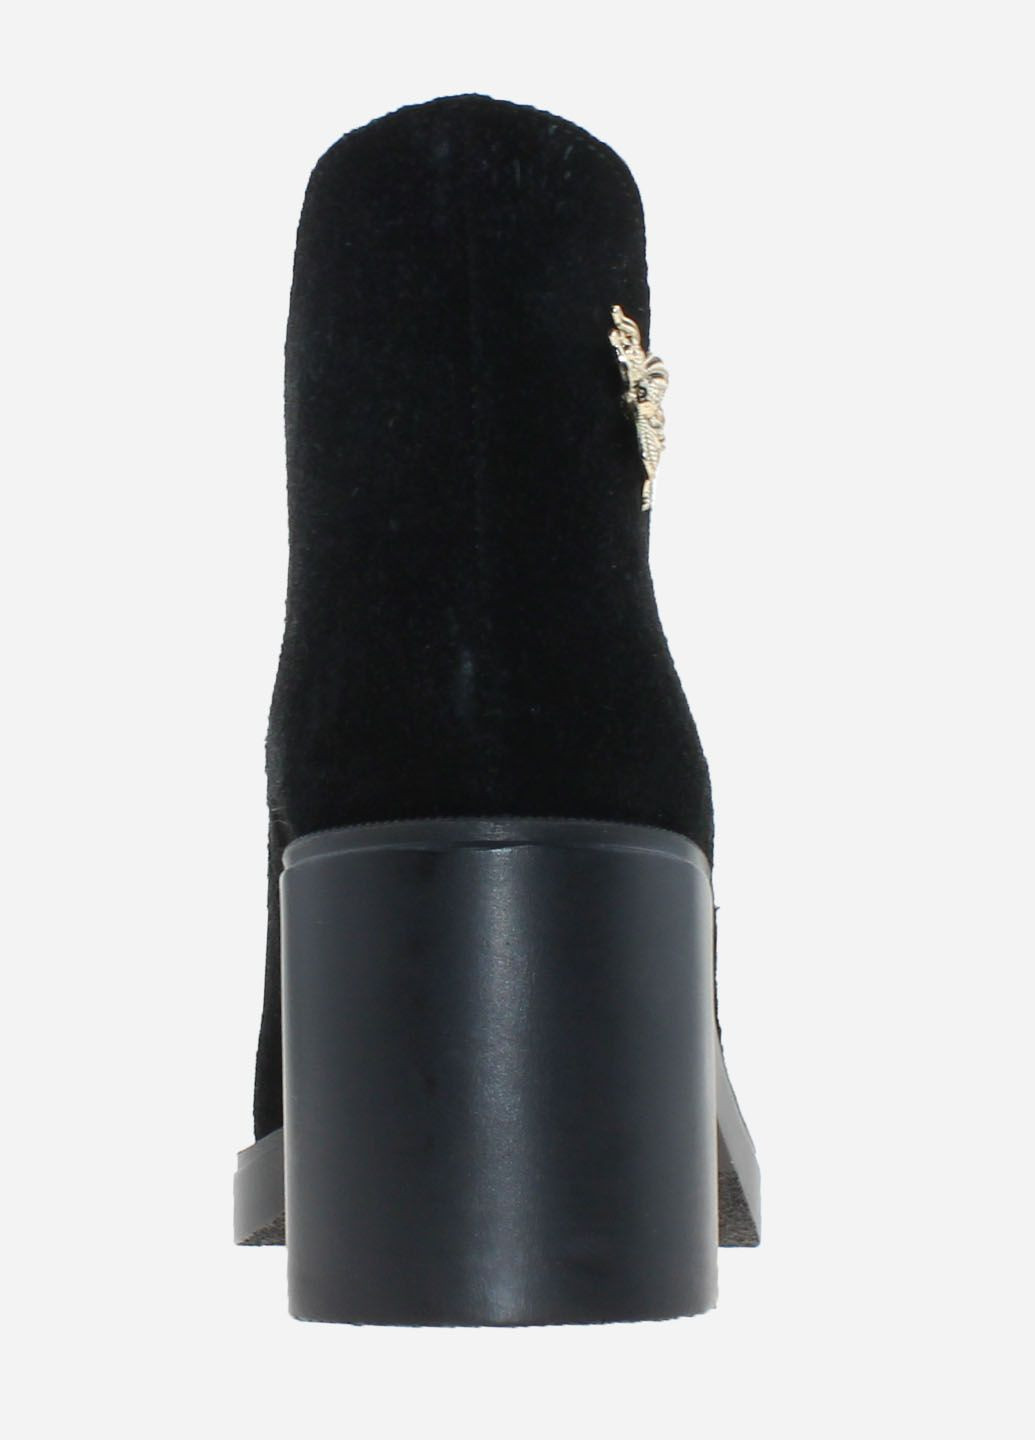 Осенние ботинки ro230-11 черный Olevit из натуральной замши